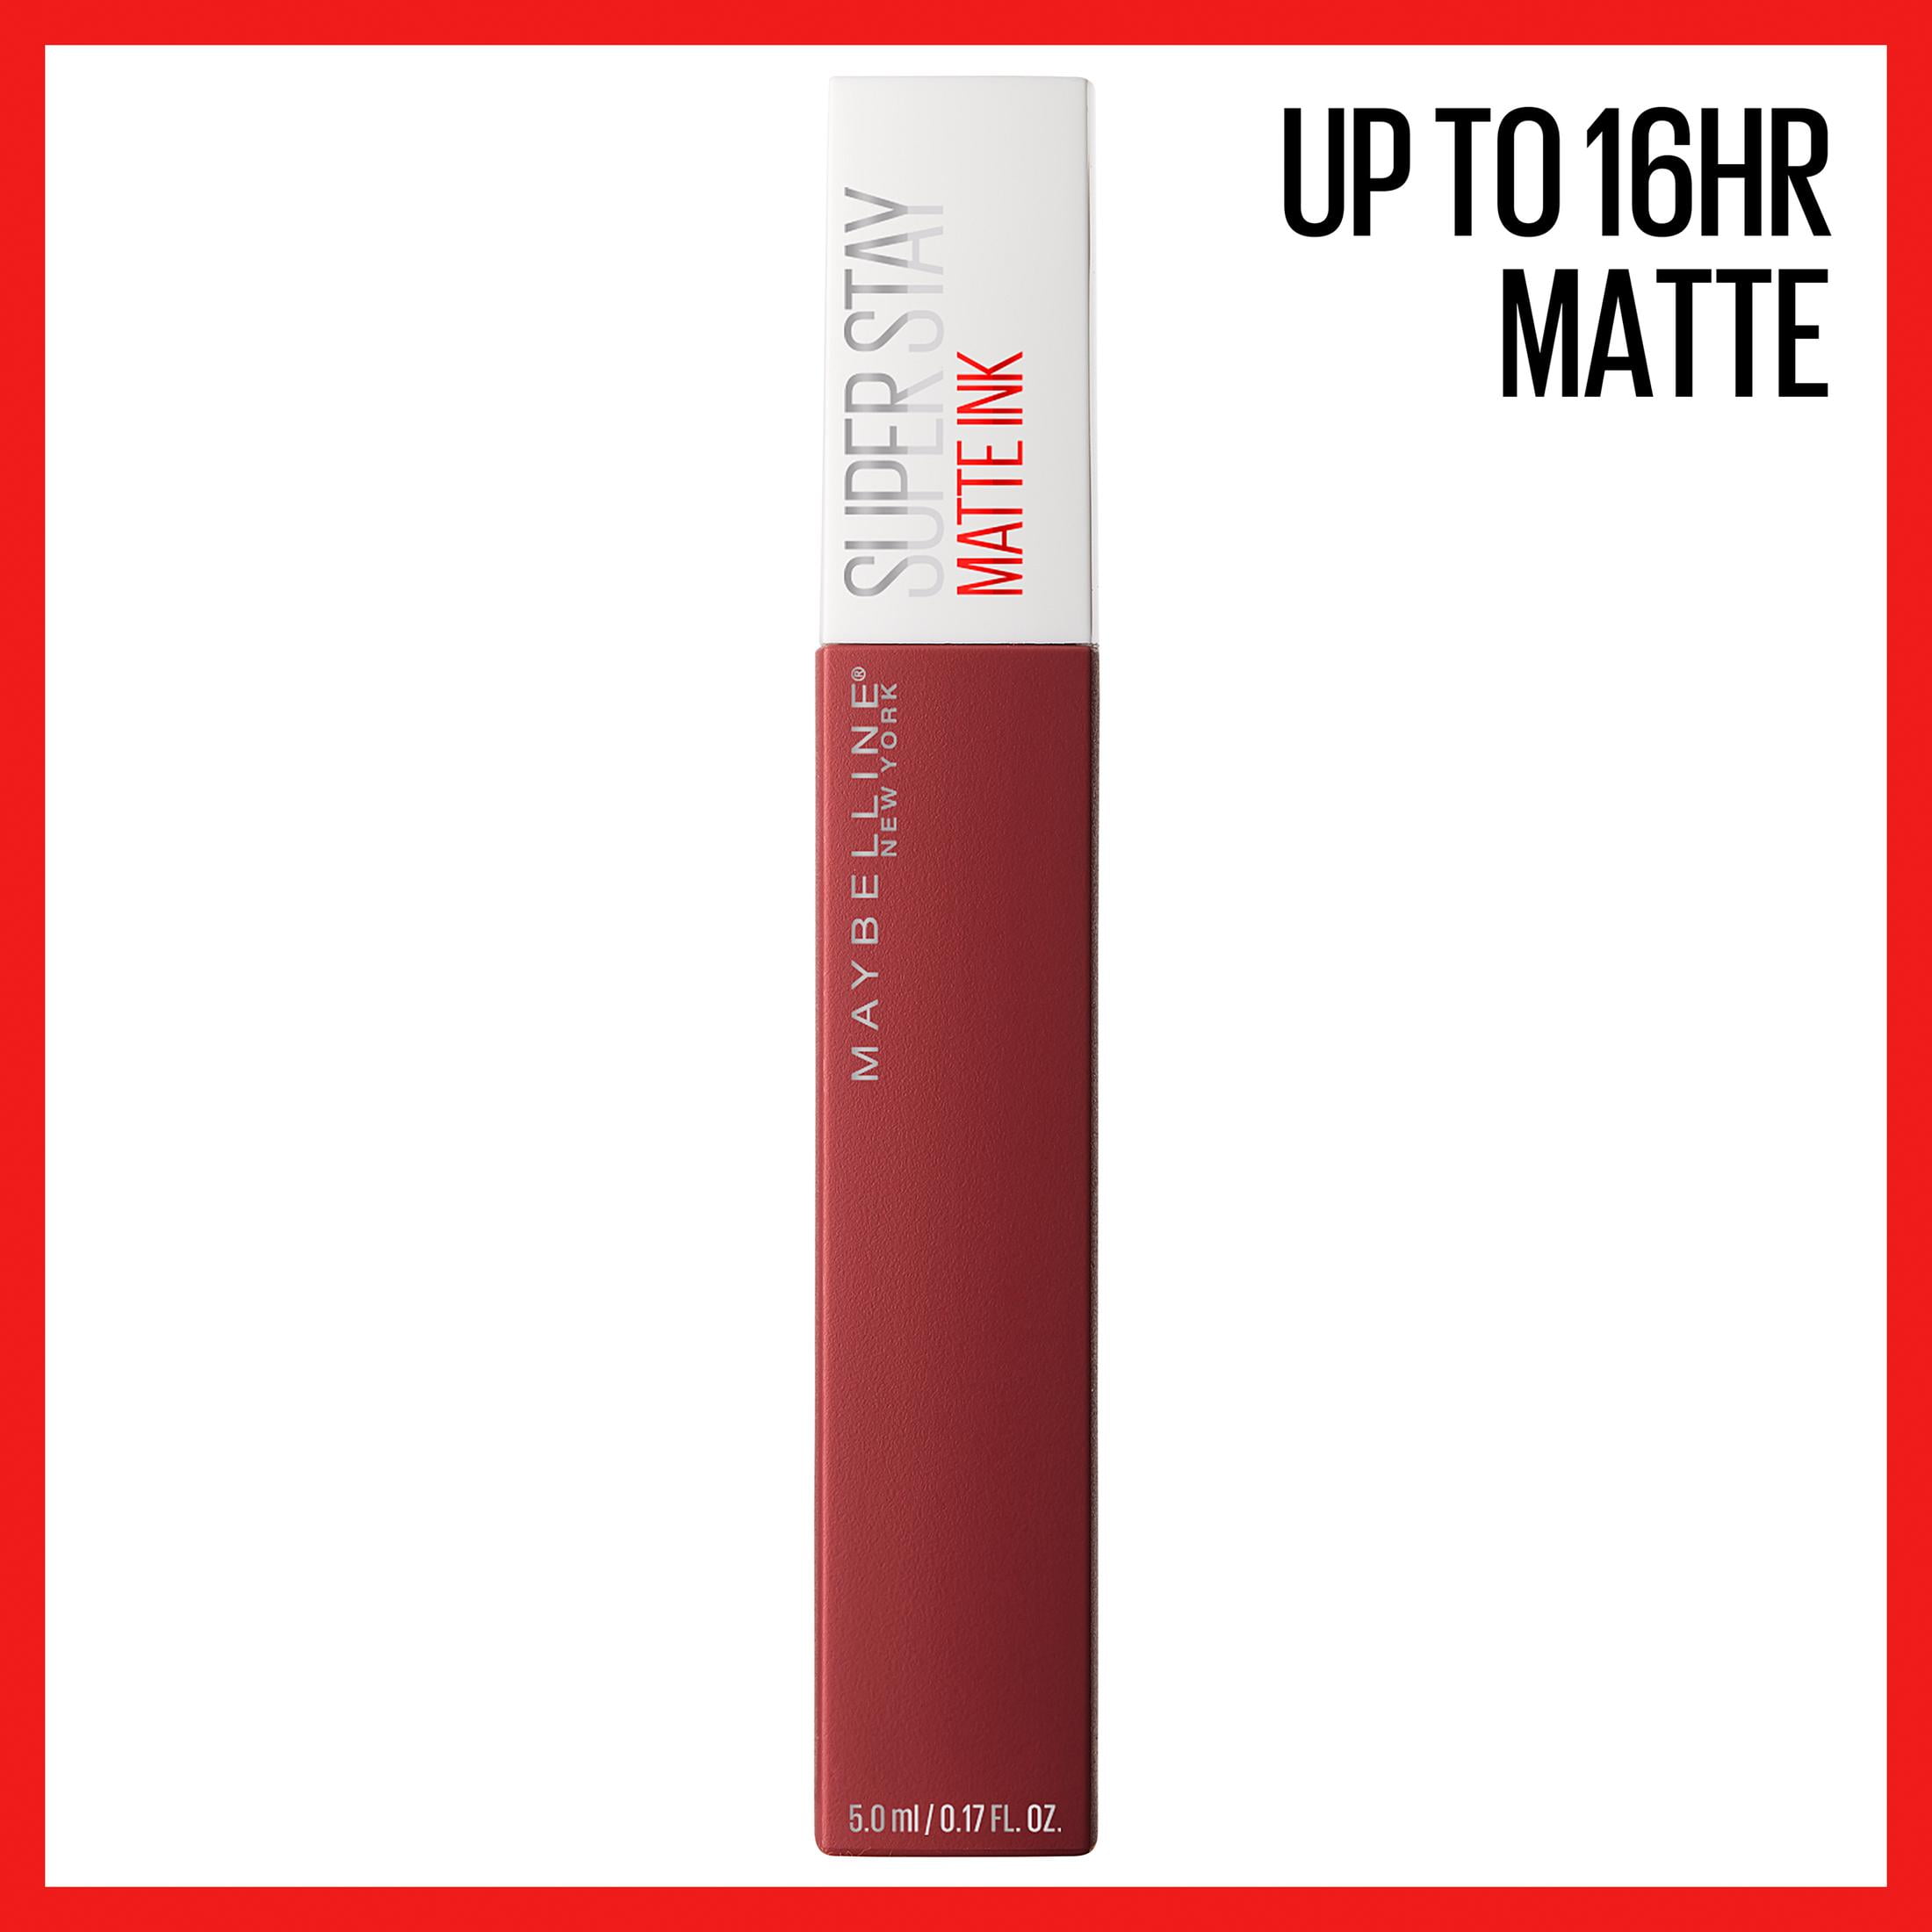 Maybelline Superstay Matte Ink Liquid Lipstick 118 Dancer 5ml (0.17fl oz)